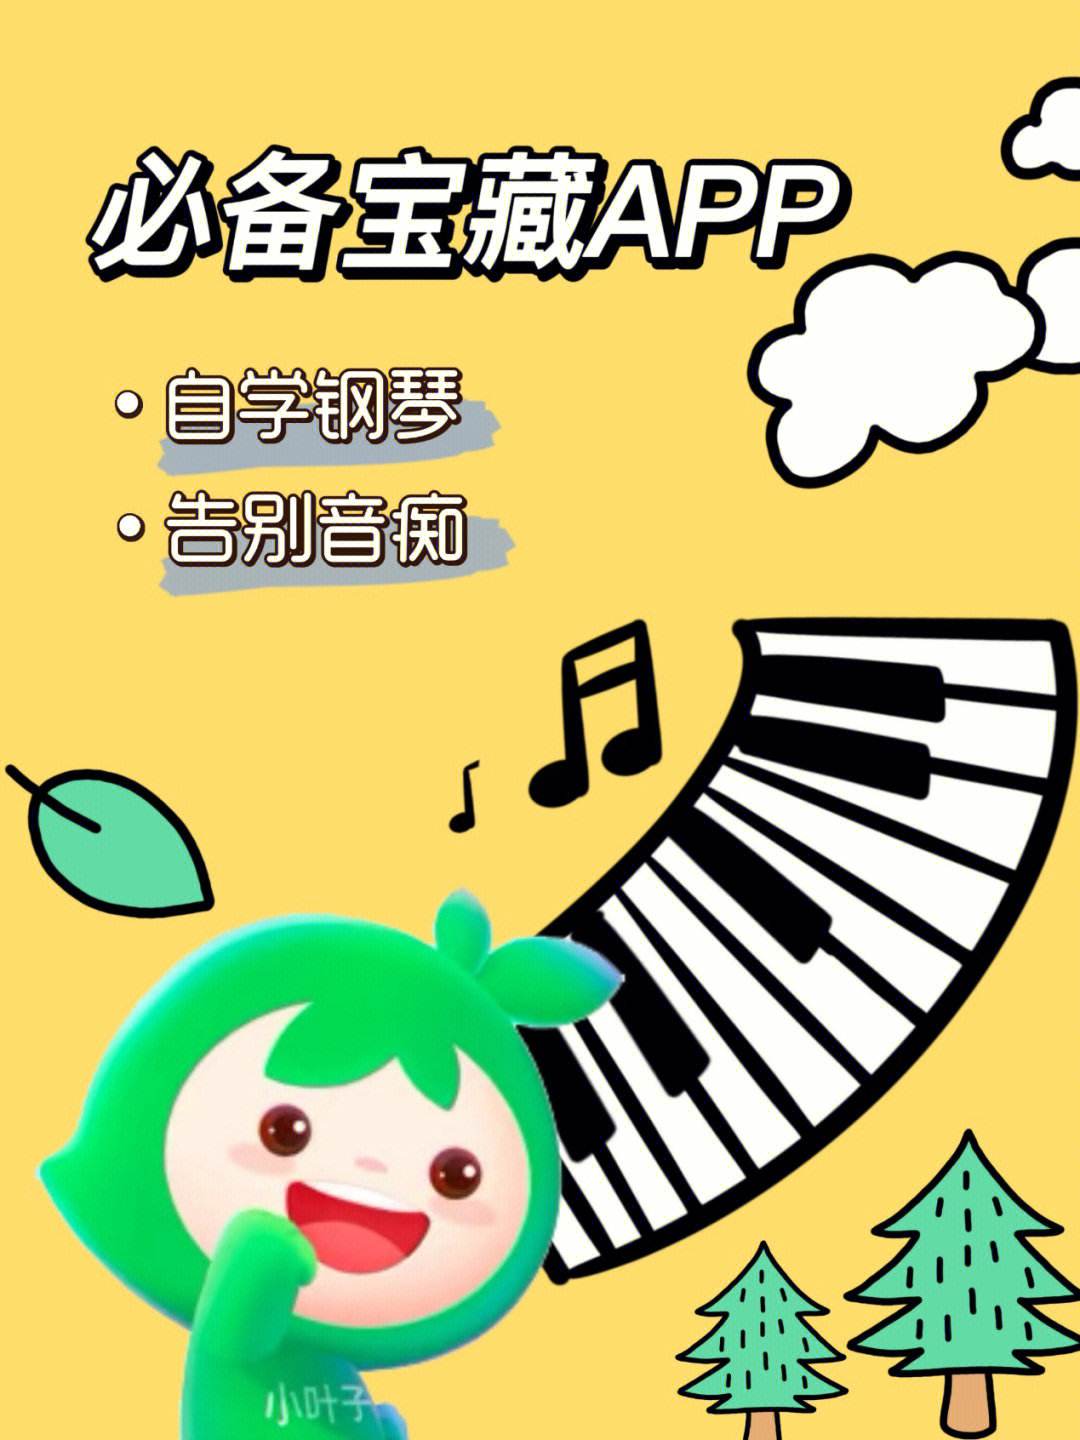 小叶子app下载官网-小叶子网络科技有限公司